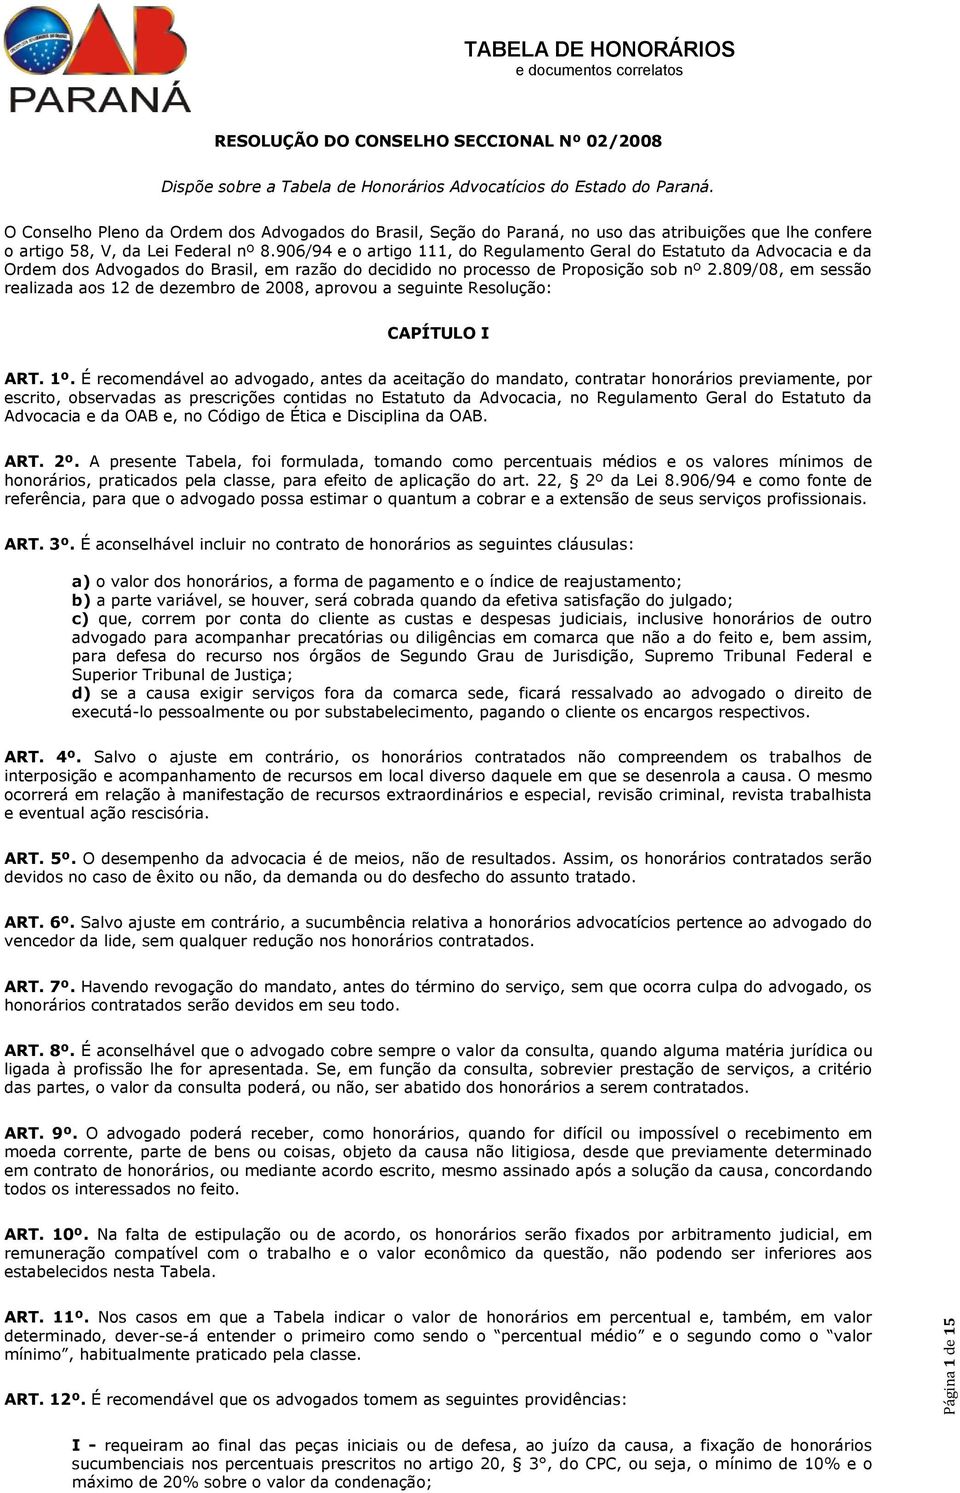 906/94 e o artigo 111, do Regulamento Geral do Estatuto da Advocacia e da Ordem dos Advogados do Brasil, em razão do decidido no processo de Proposição sob nº 2.